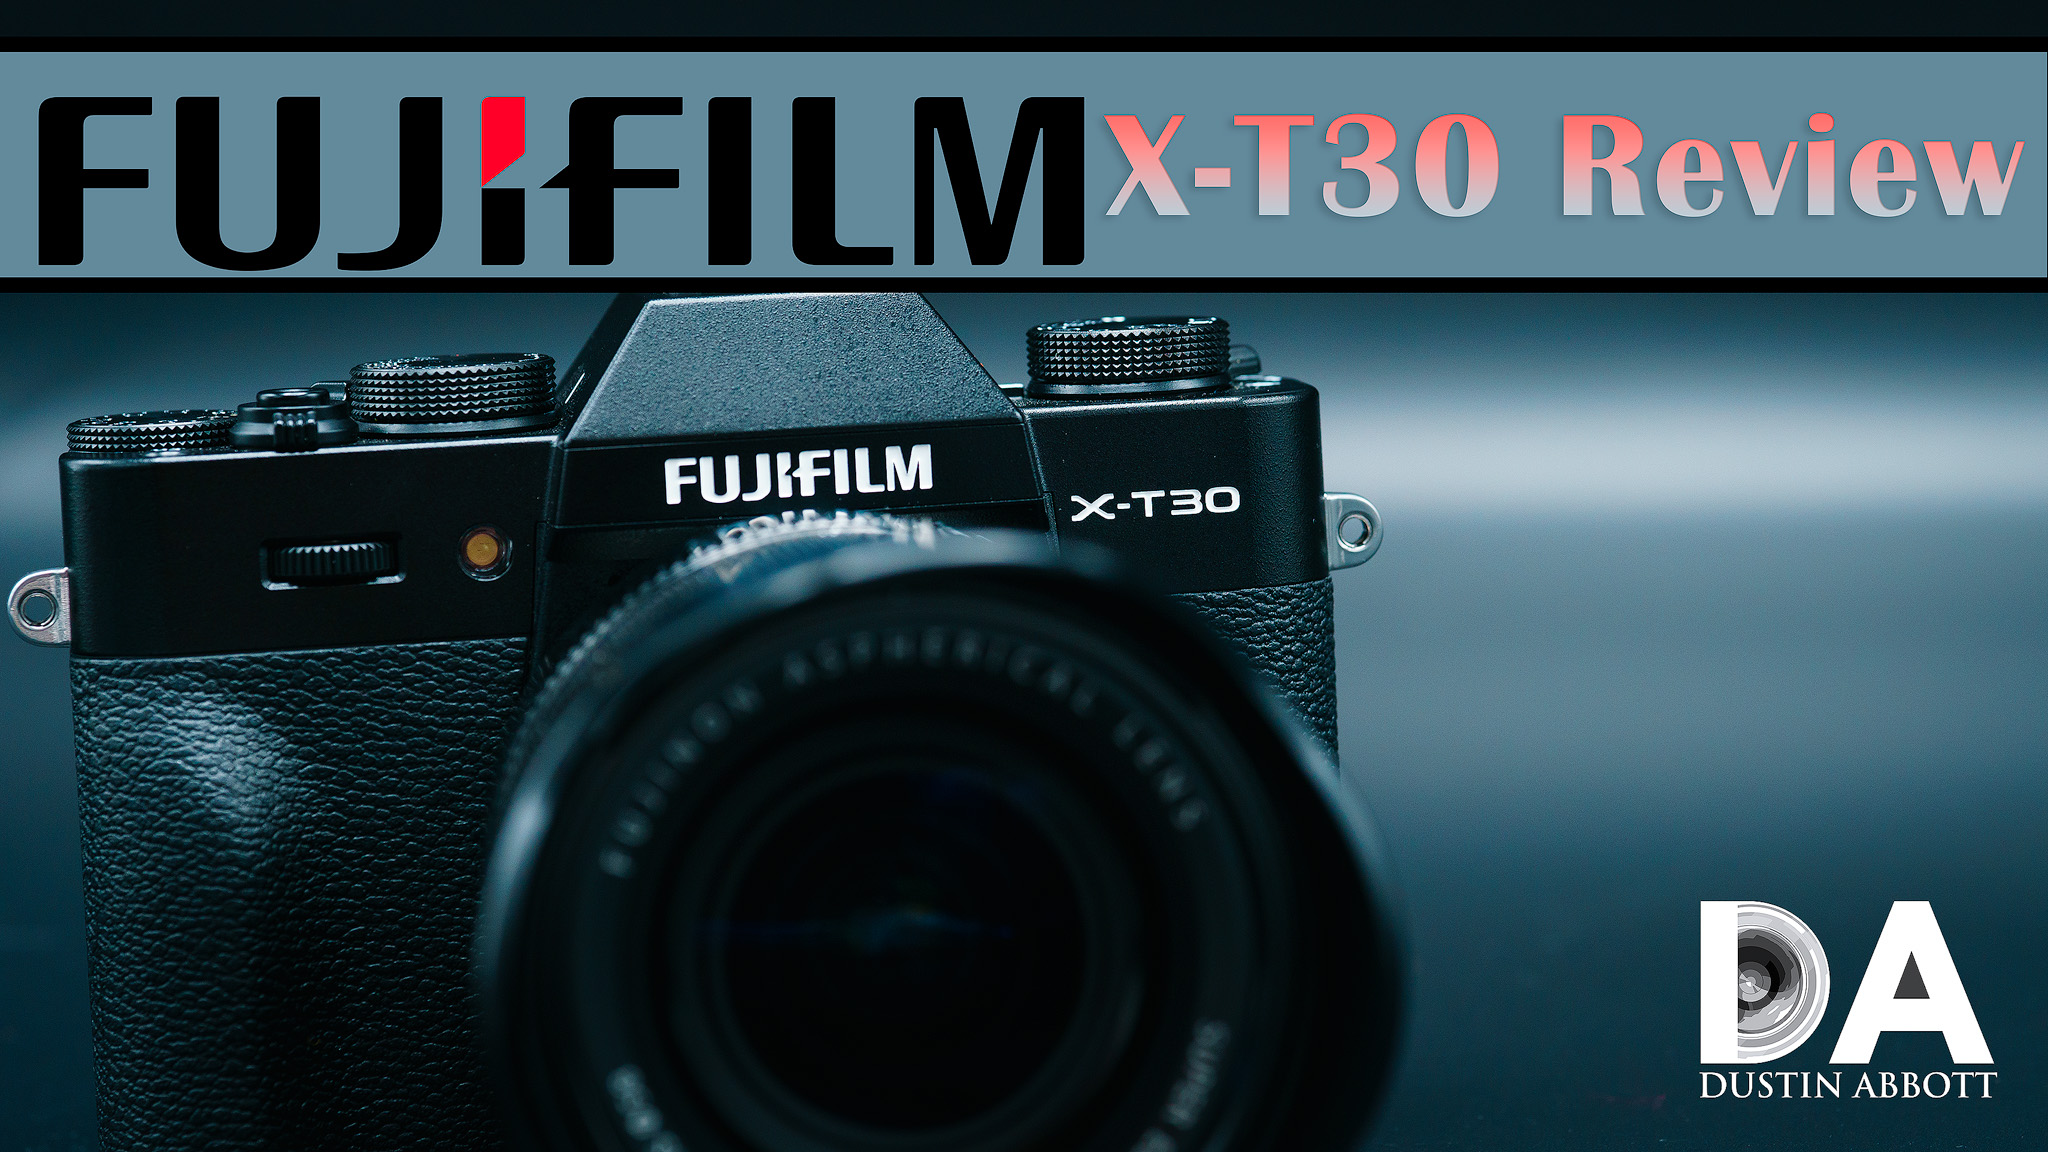 FUJIFILM X-T30 Mirrorless Digital Camera XT30